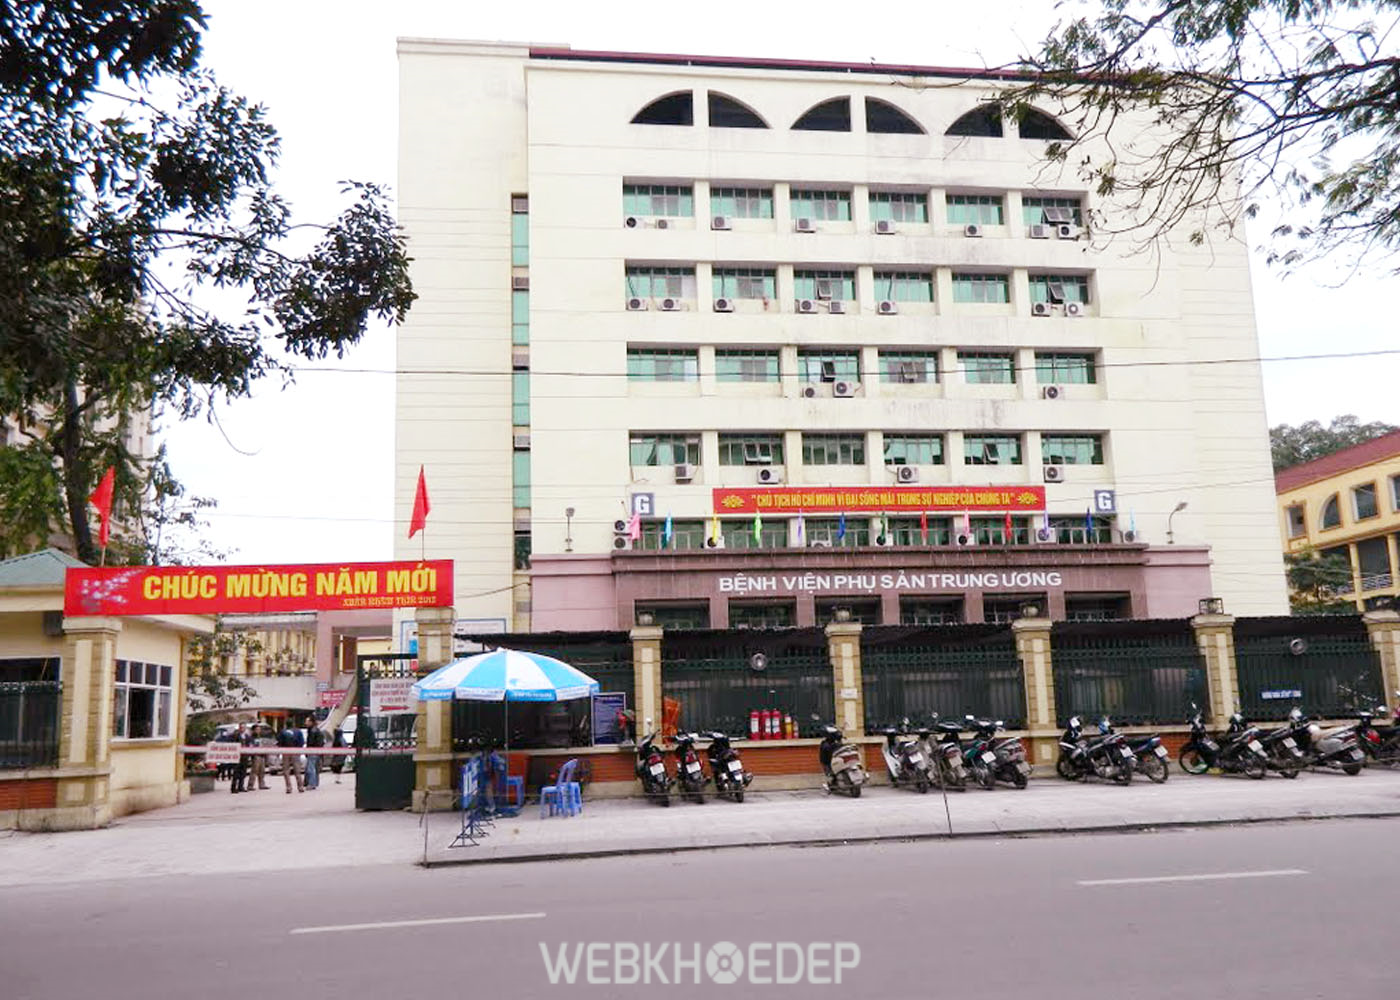 Phụ sản Trung Ương - nên sinh con ở bệnh viện nào ở Hà Nội?